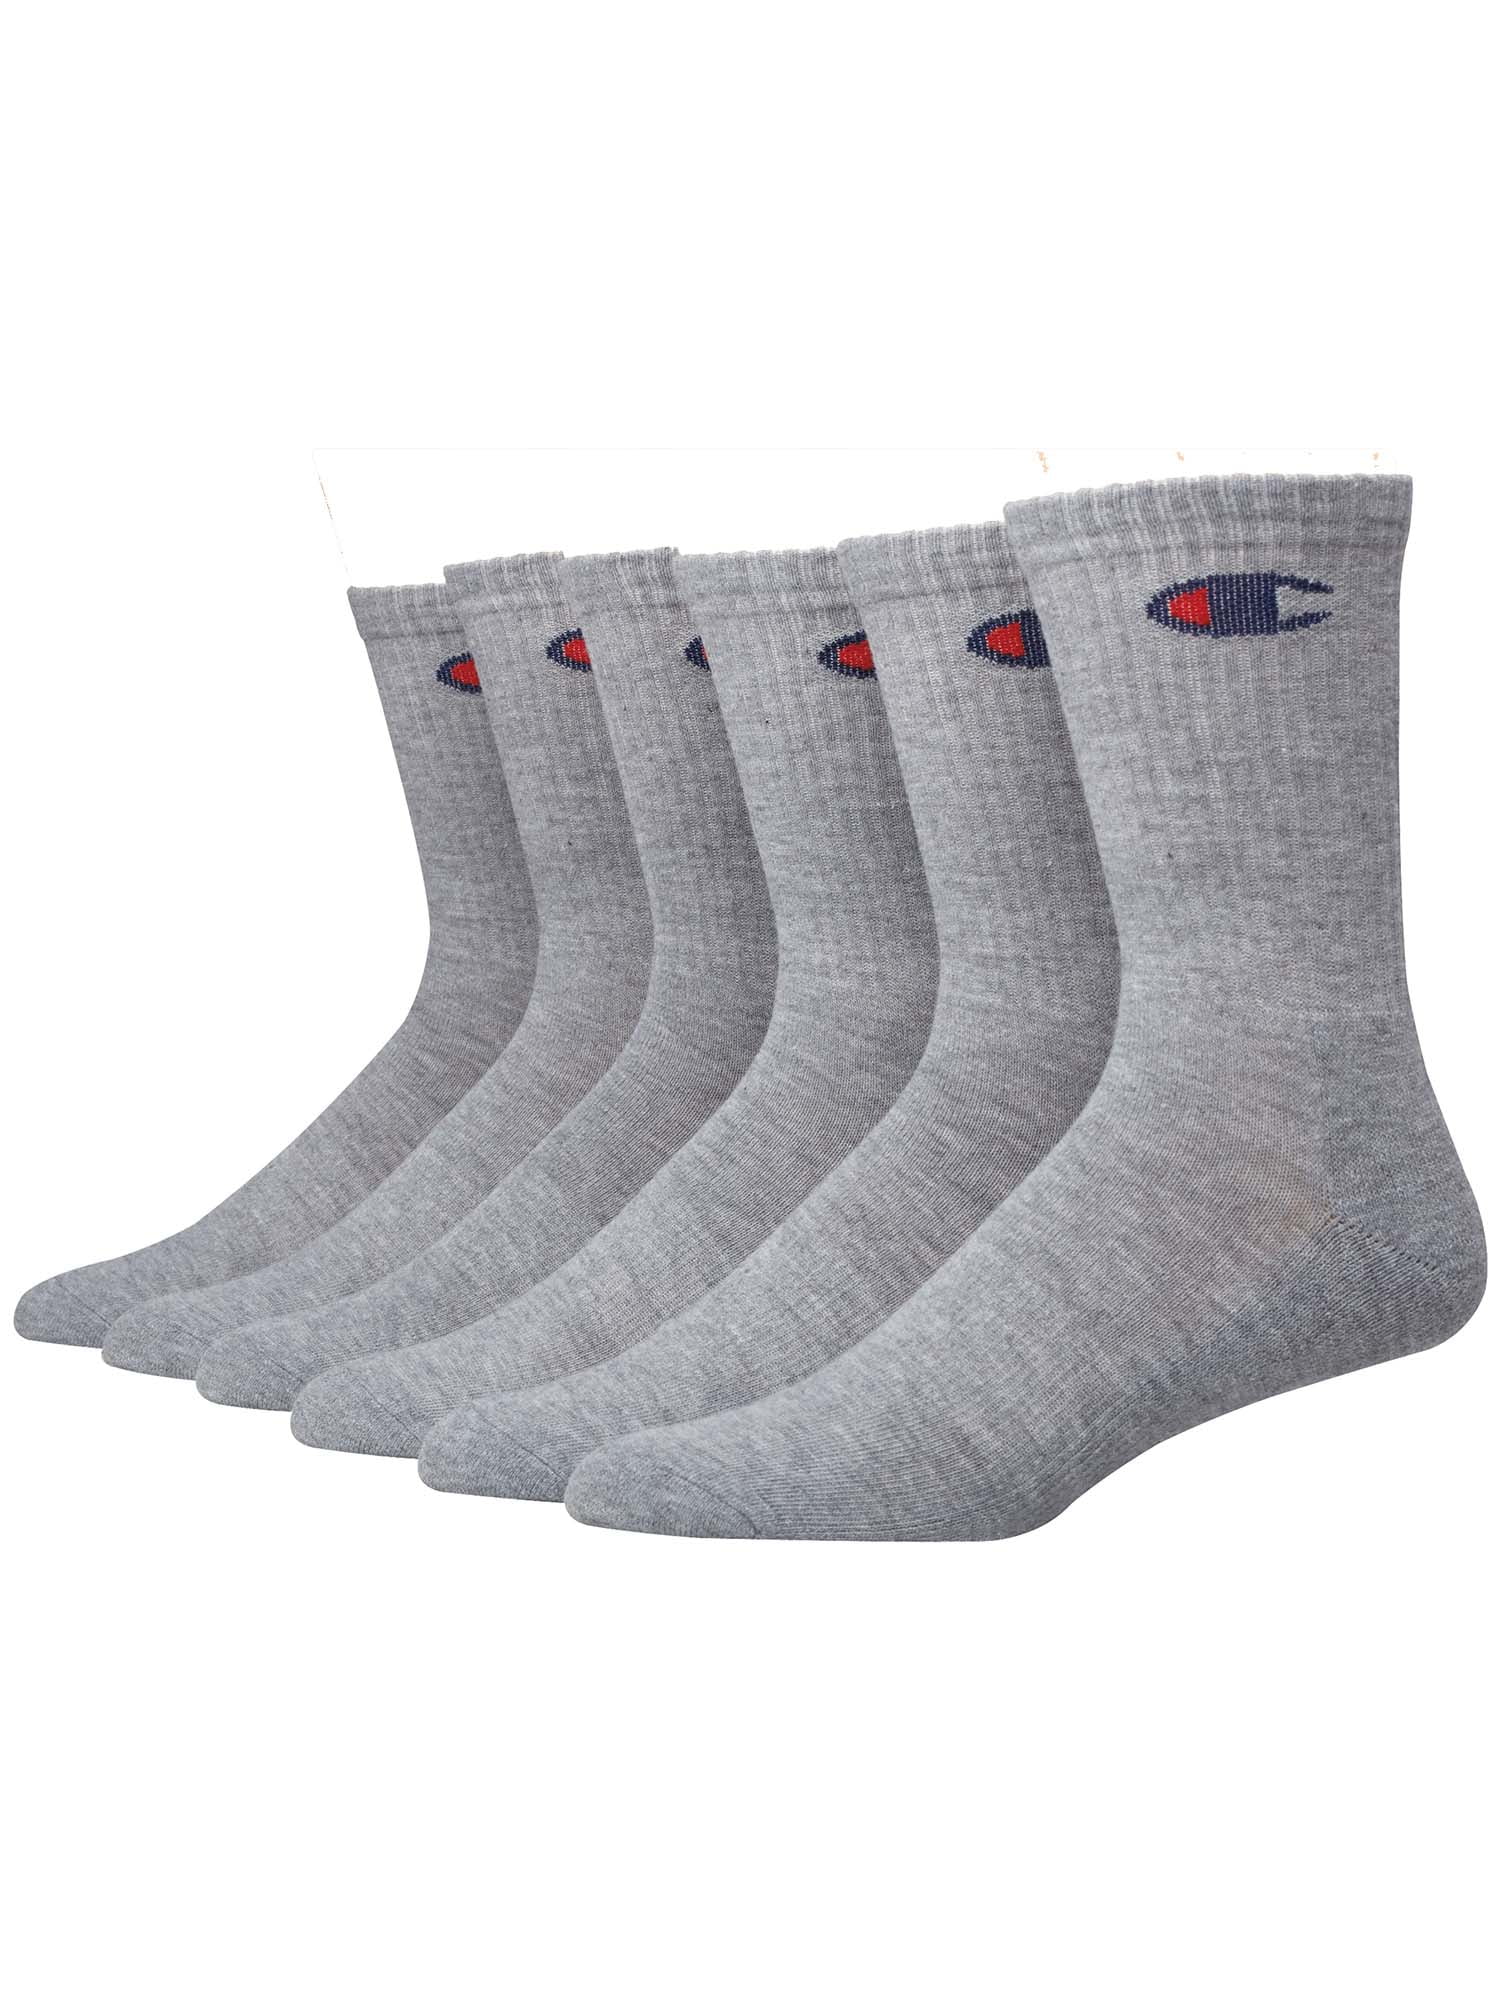 Champion Men's Crew Socks, 6 Pack